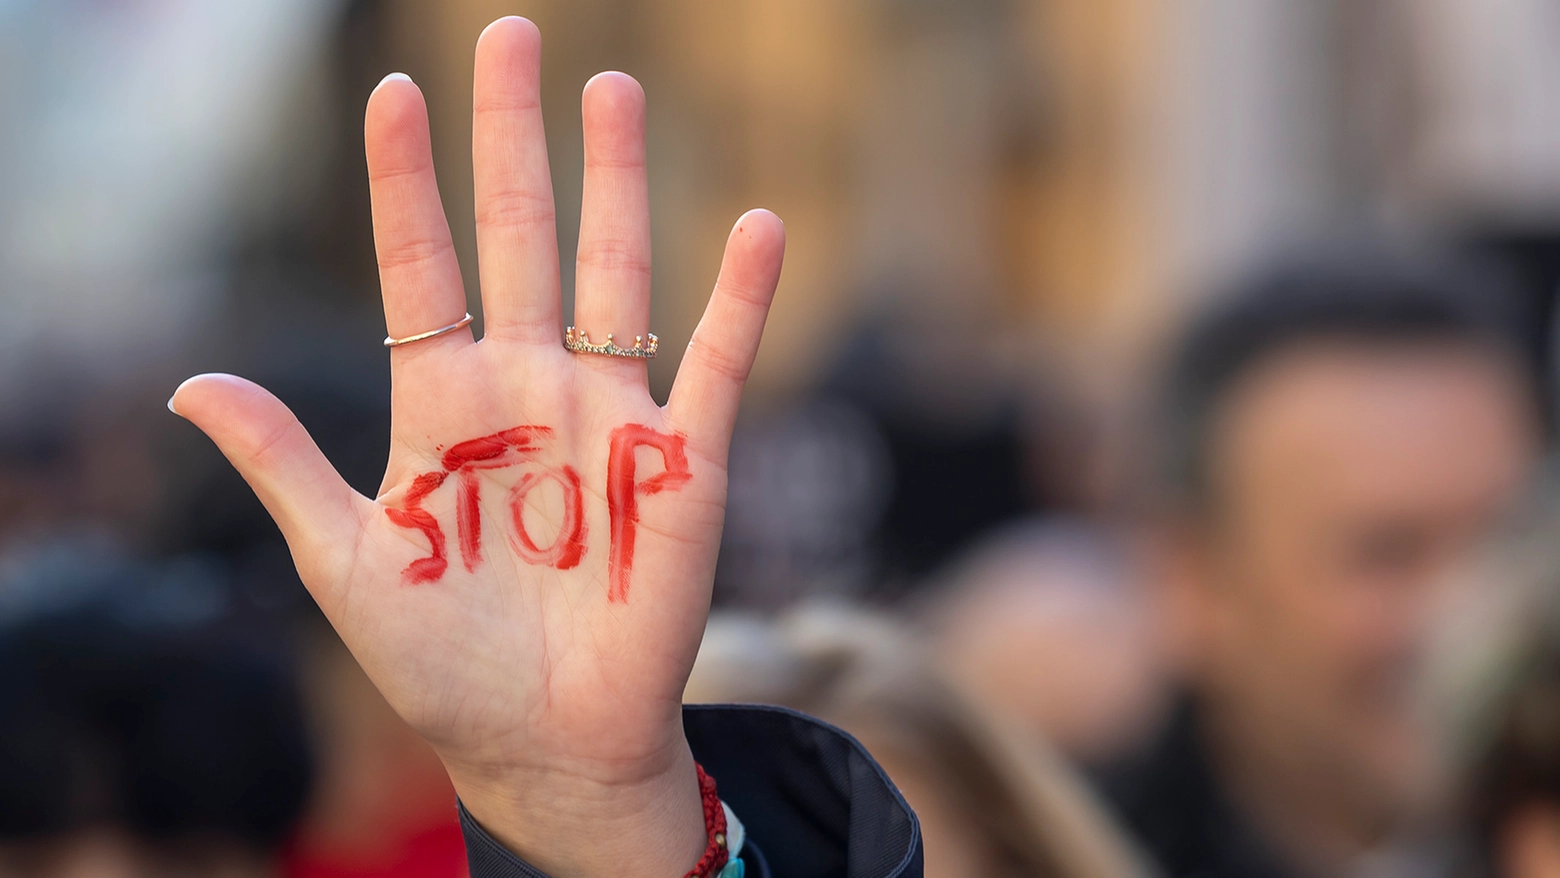 Violenza sulle donne: una 15enne ha denunciato di essere stata stuprata ad Alba Adriatica (Teramo) e abbandonata nuda per strada